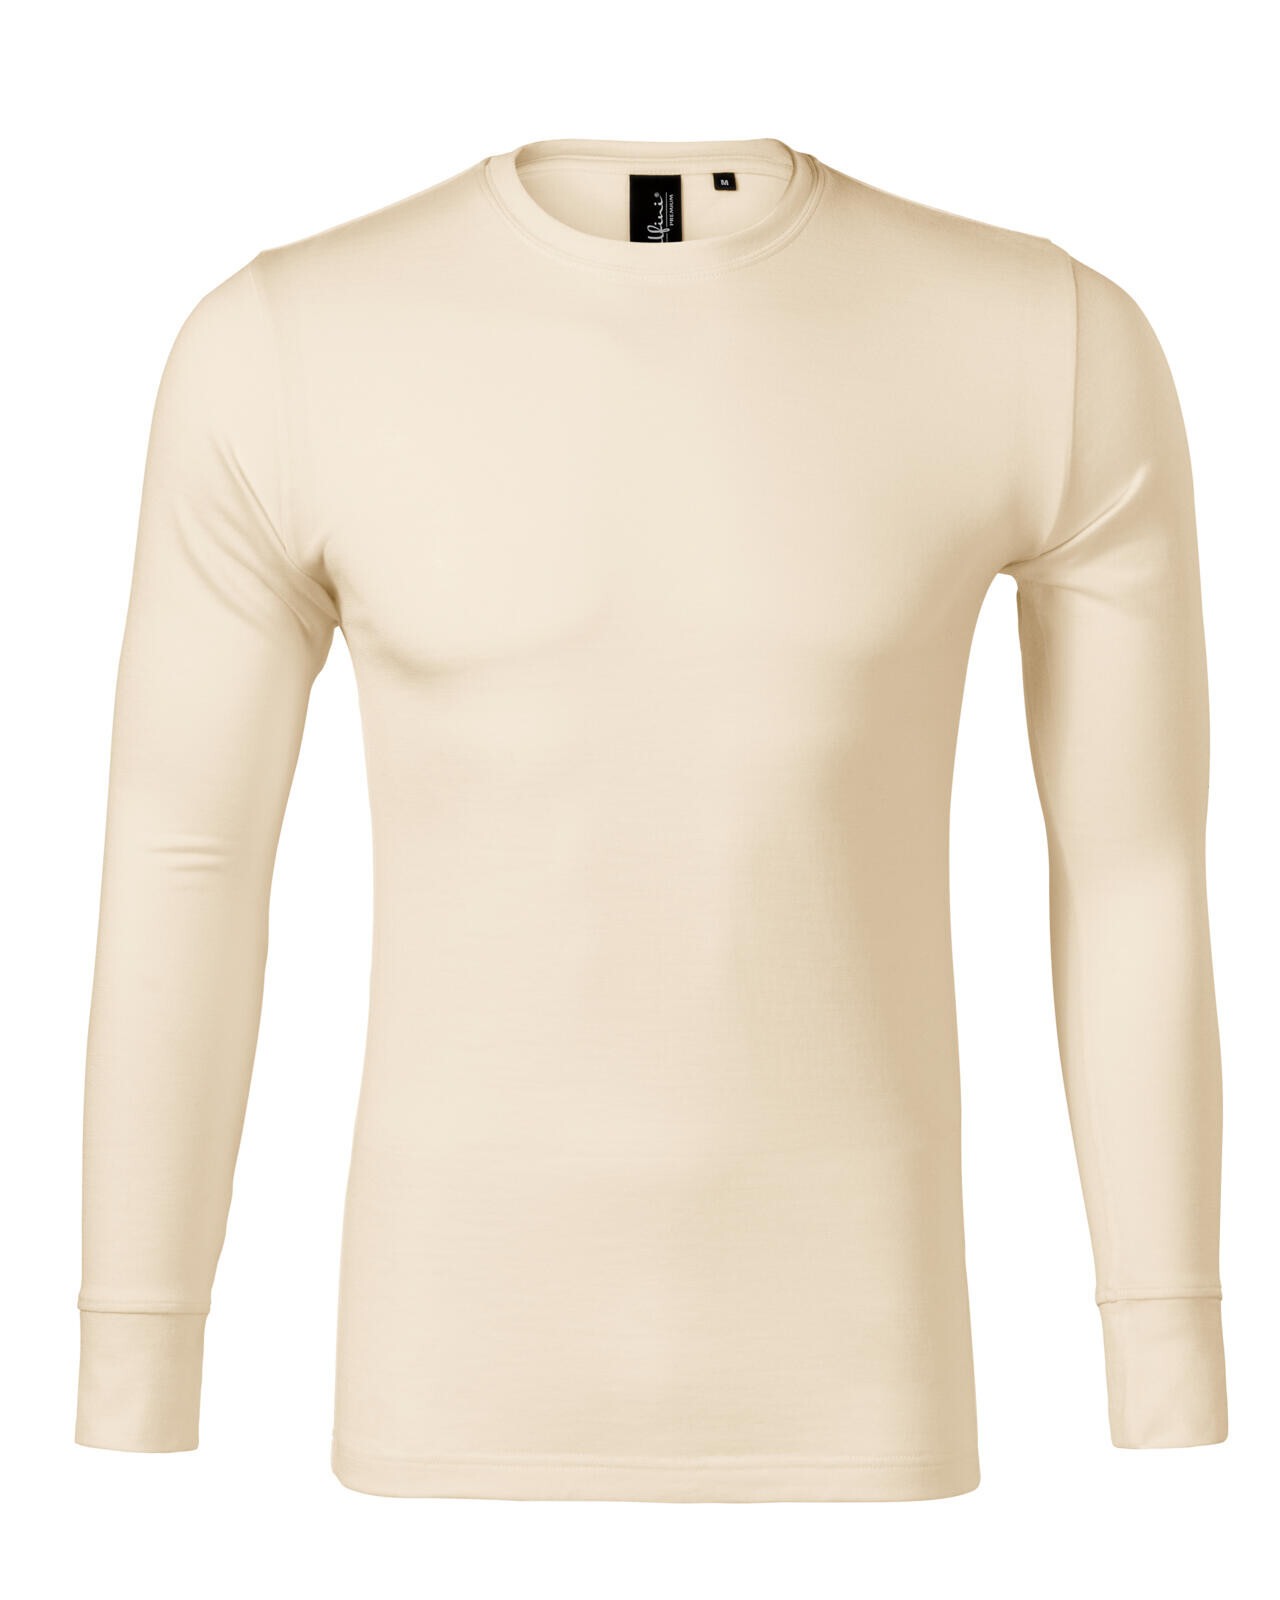 Pánske merino tričko s dlhým rukávom Malfini Premium Merino Rise LS 159 - veľkosť: S, farba: mandľová